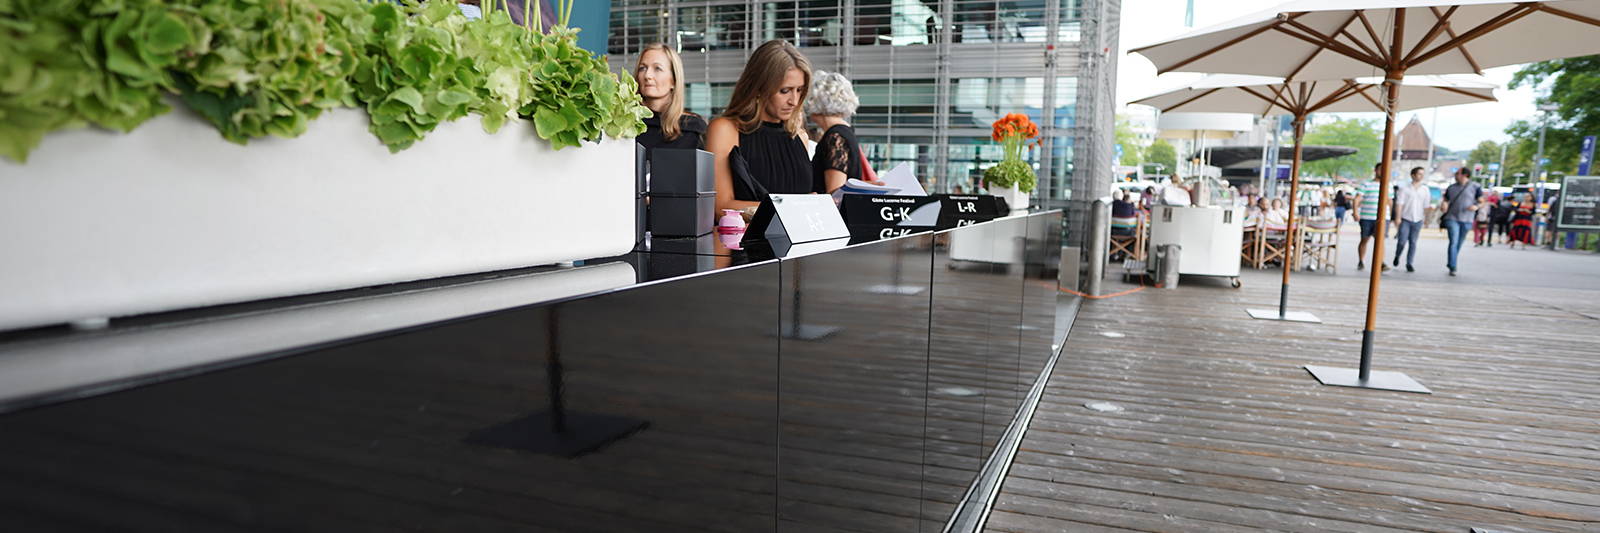 Desk & Empfangs Theke mieten für Gäste Empfang. Registierungs Desk mieten in schwarz mit Sonnenschirm